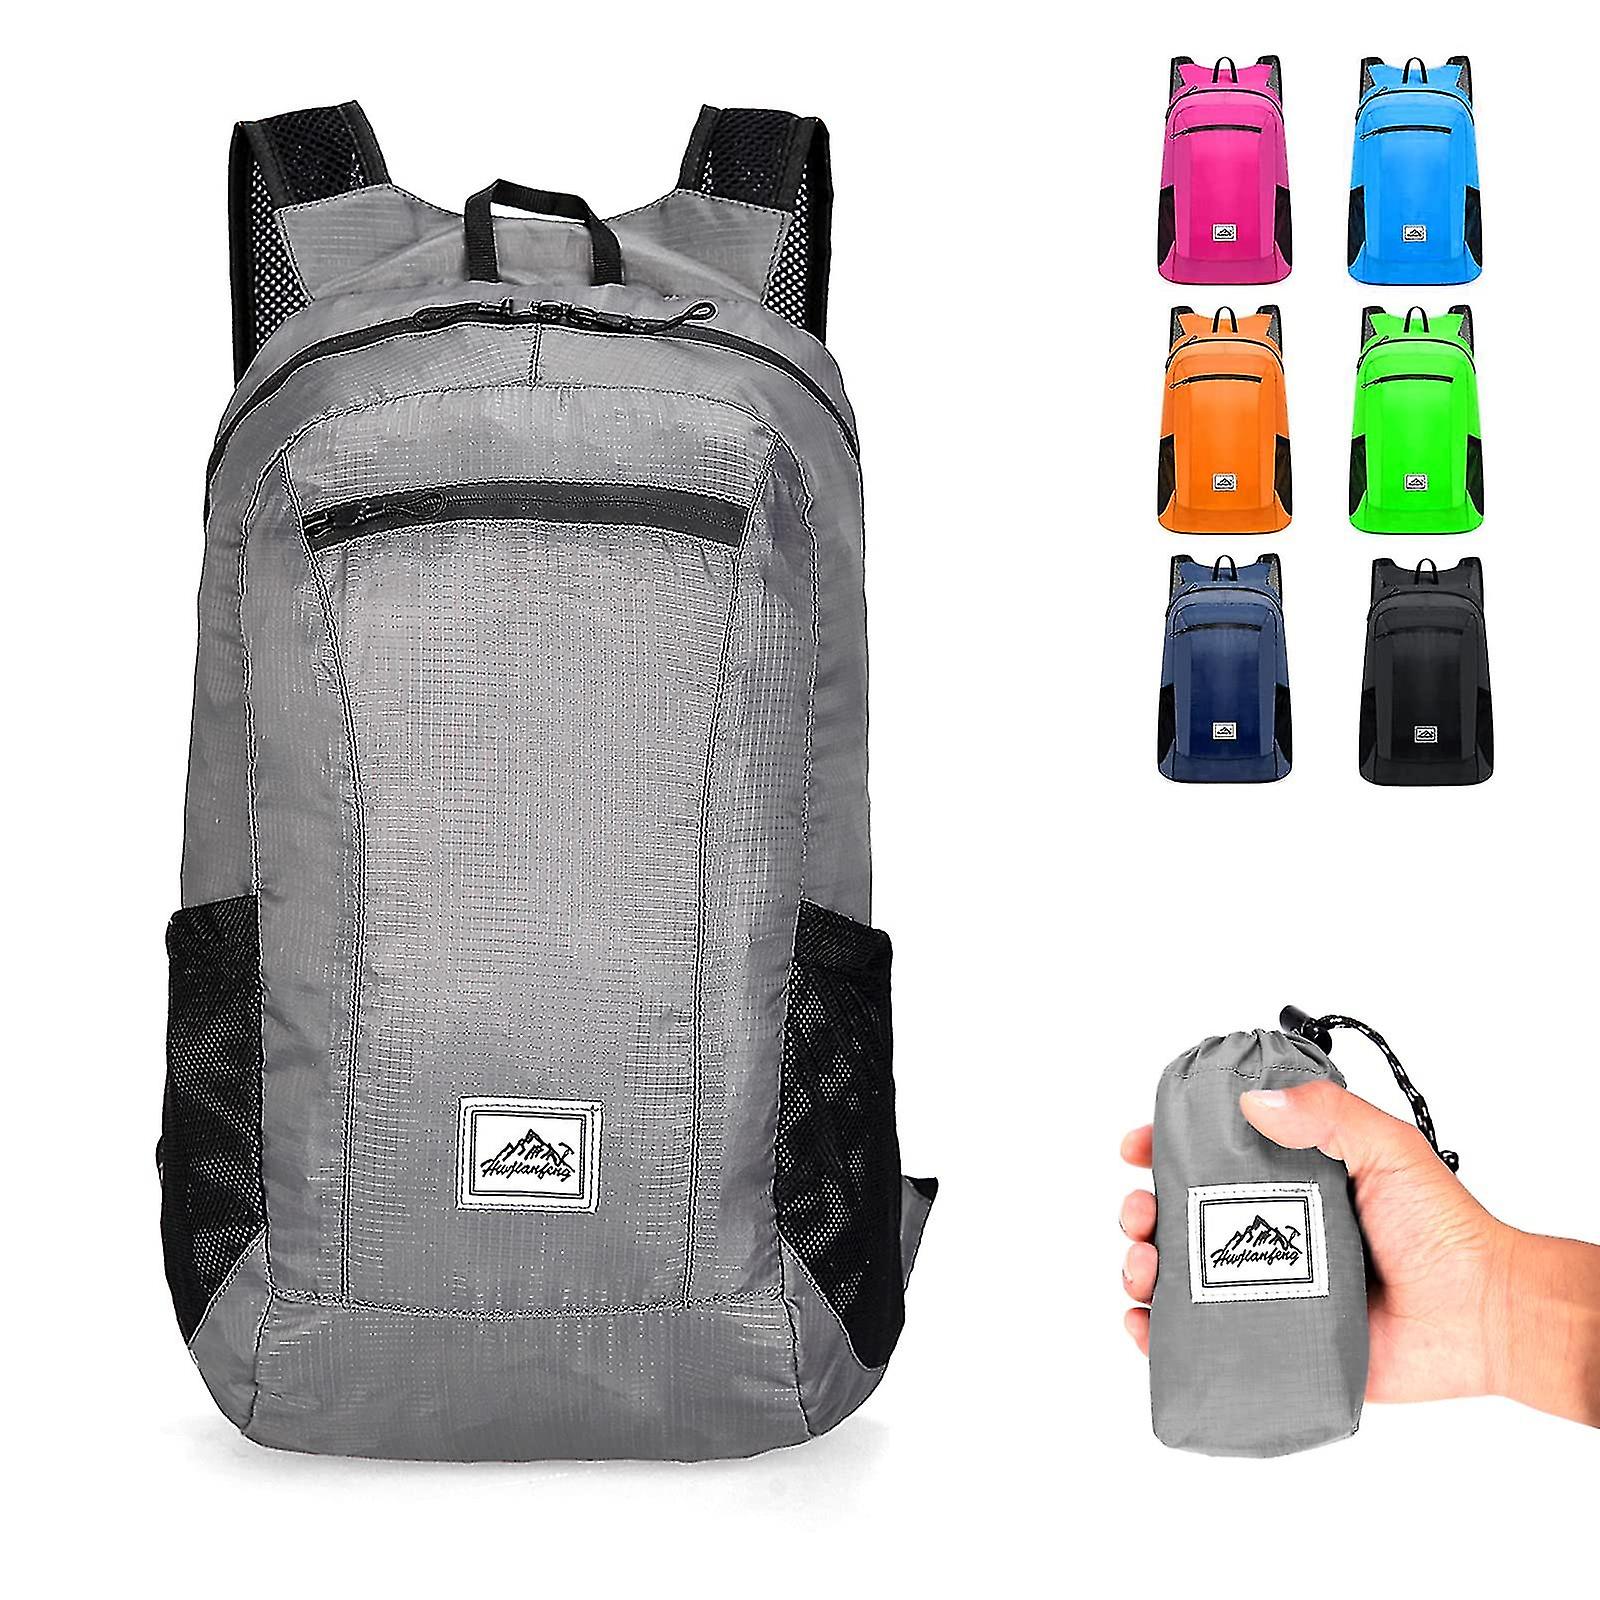 Waterproof Backpack for Motorcycle Adventurers